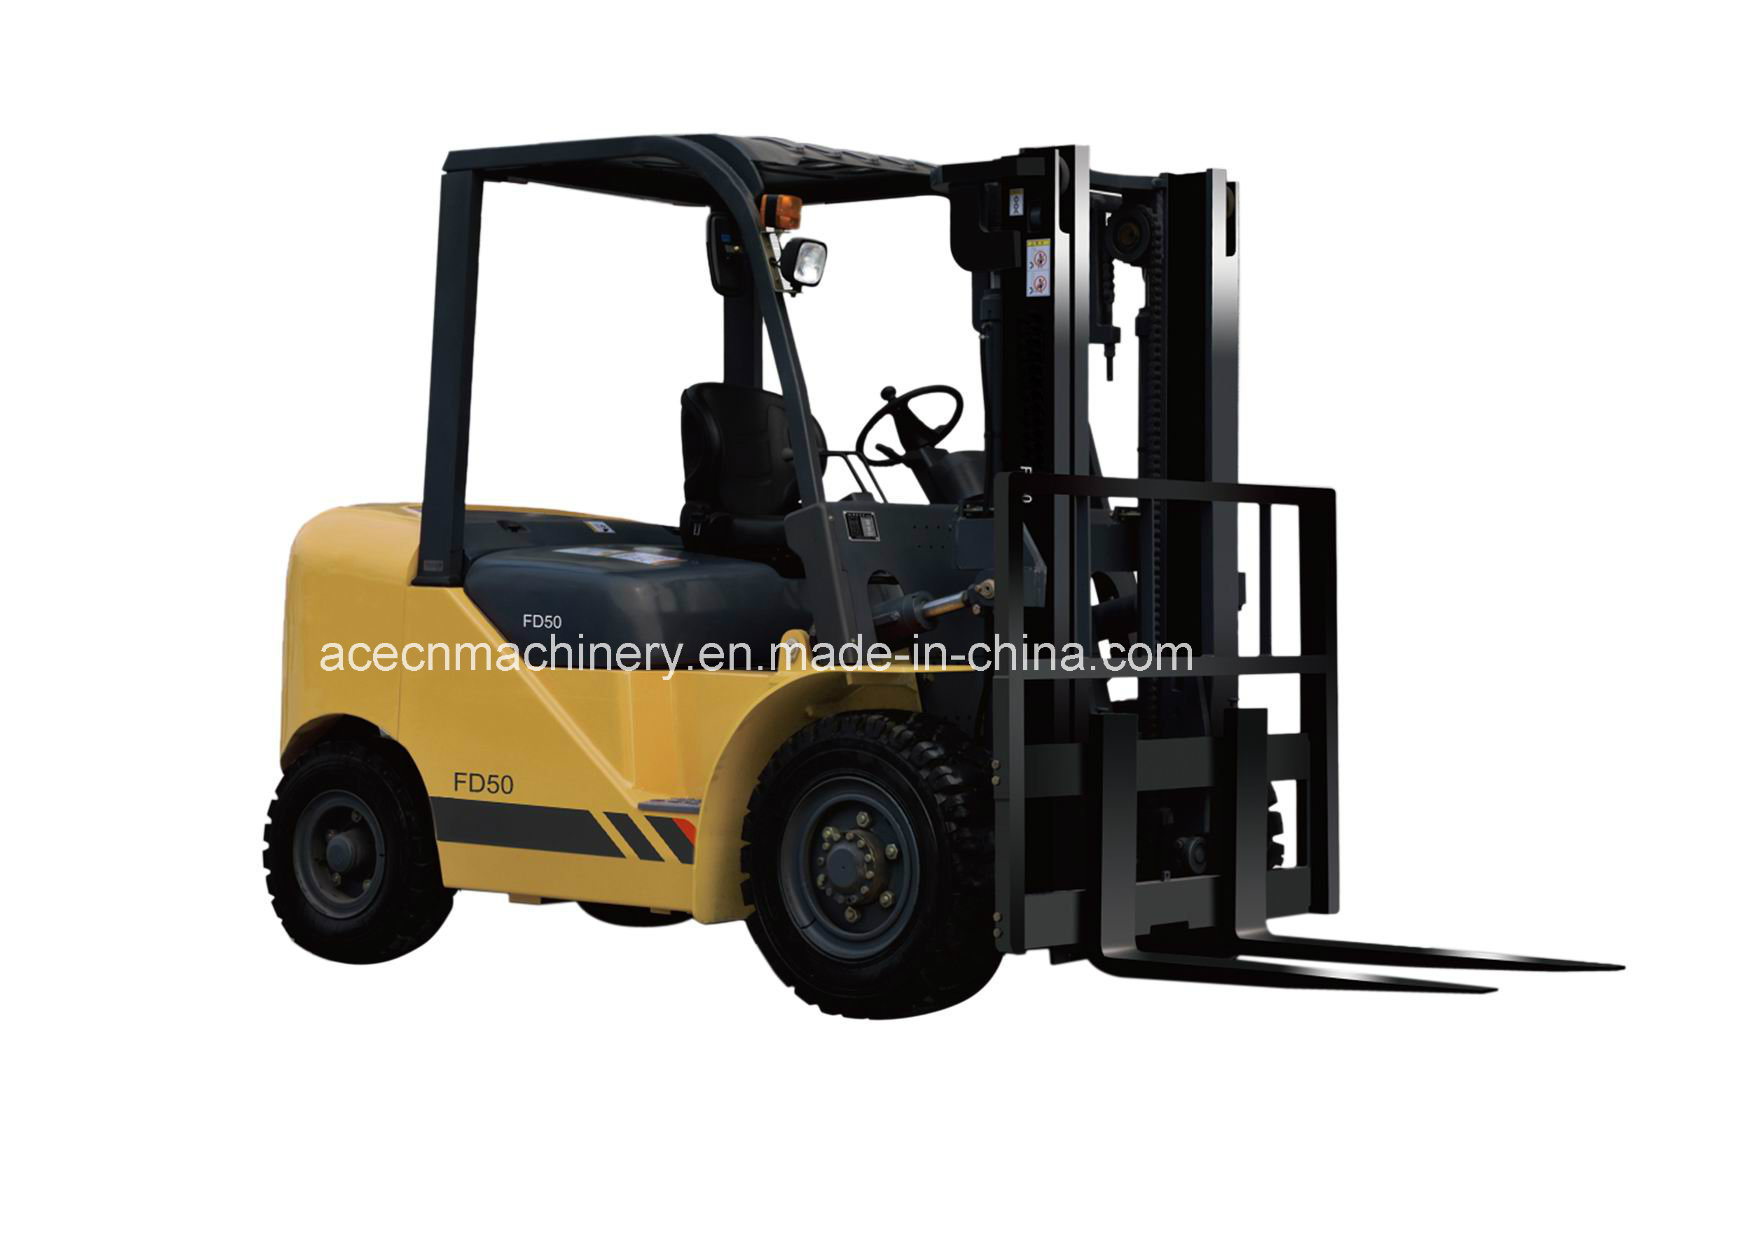 China Forklift Manufacture 5.0t Diesel Forklift